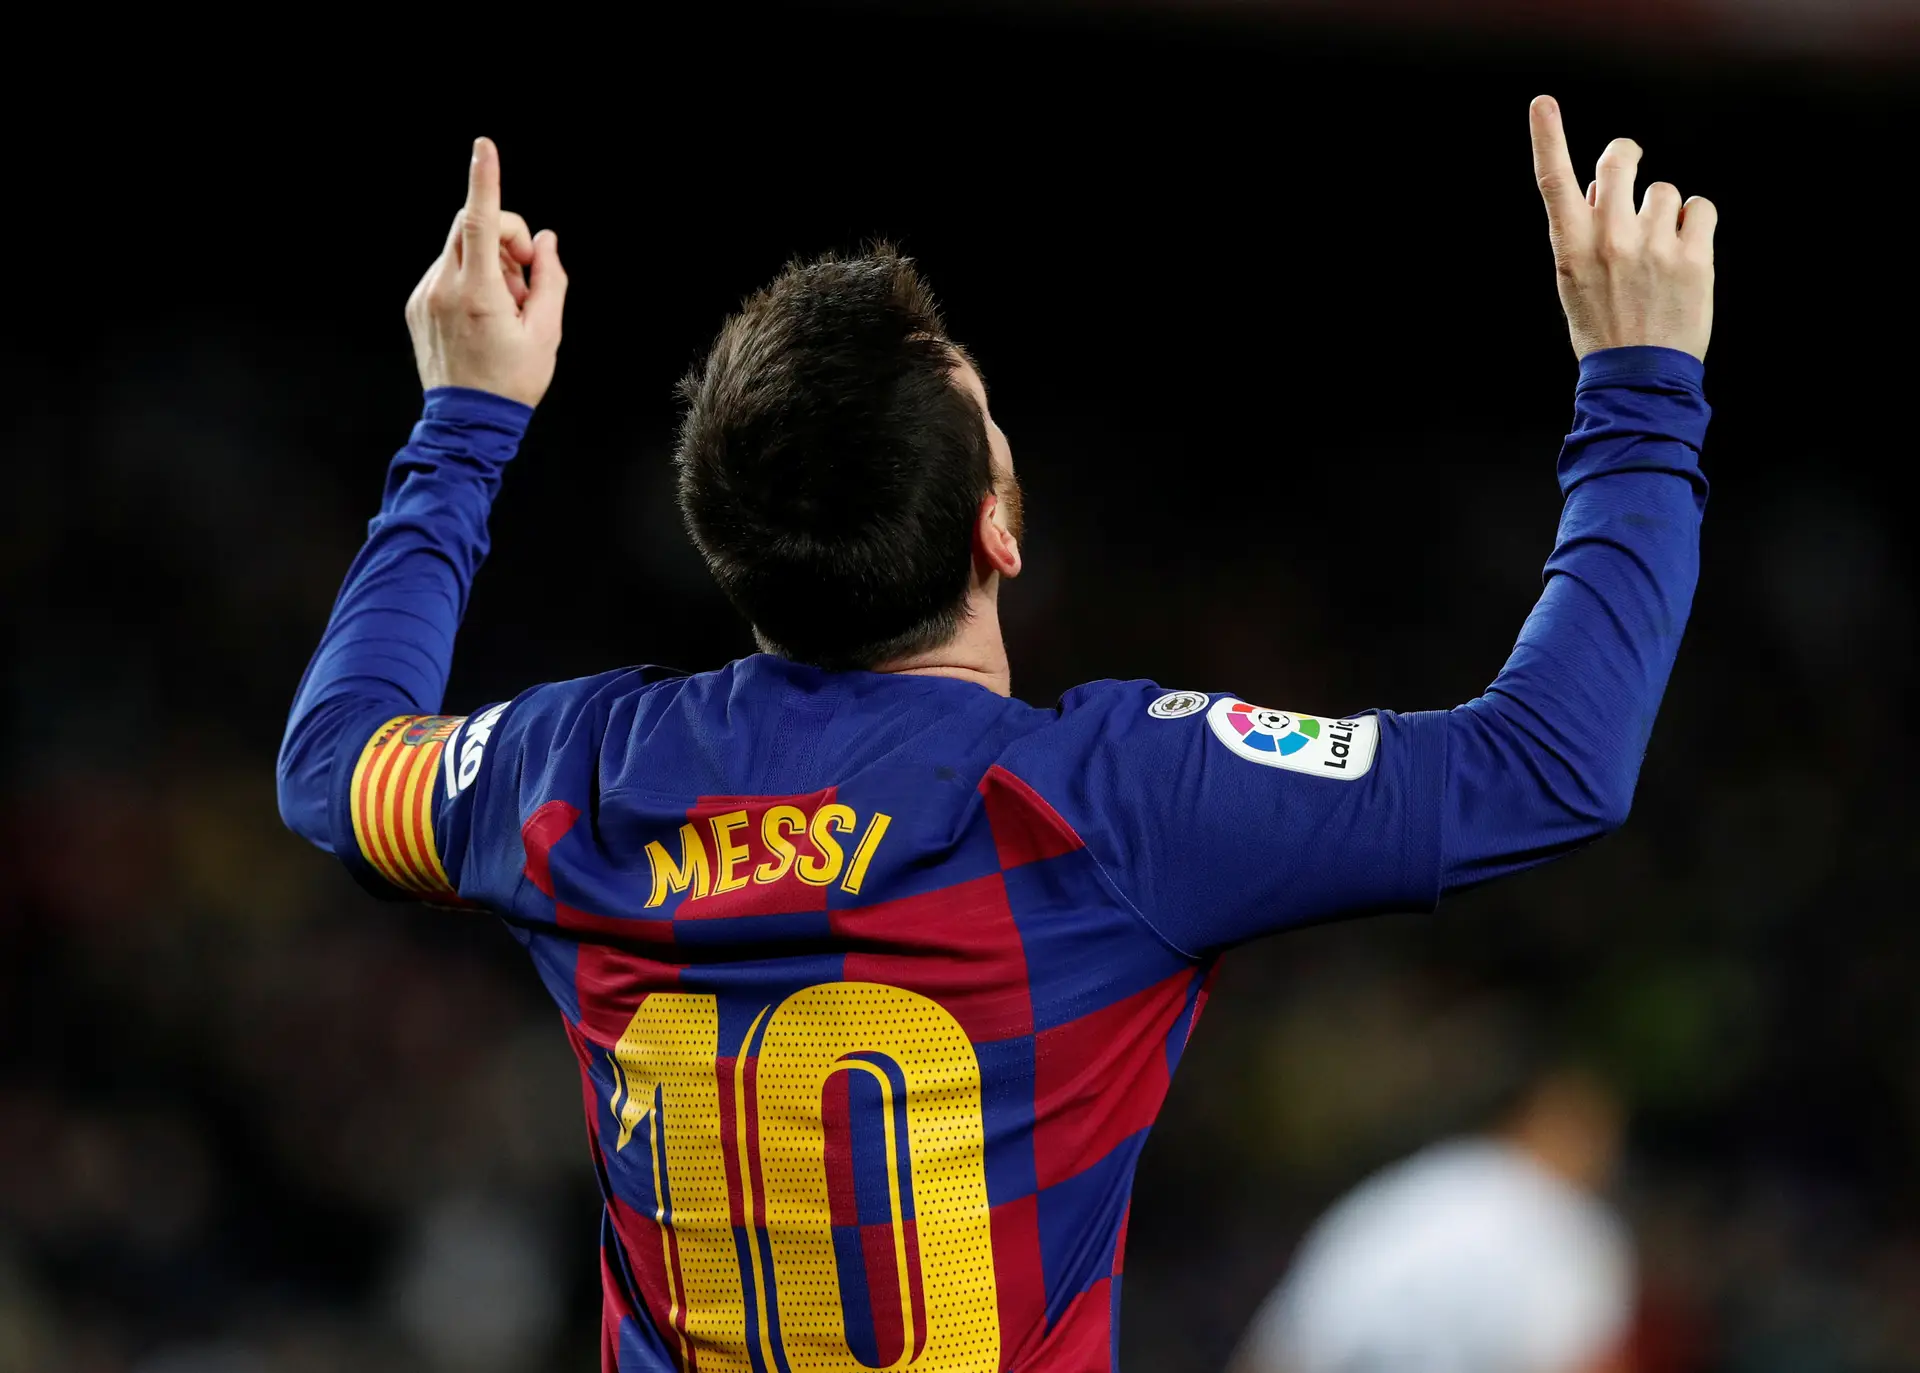 Messi é o jogador de futebol mais bem pago do mundo - ISTOÉ DINHEIRO